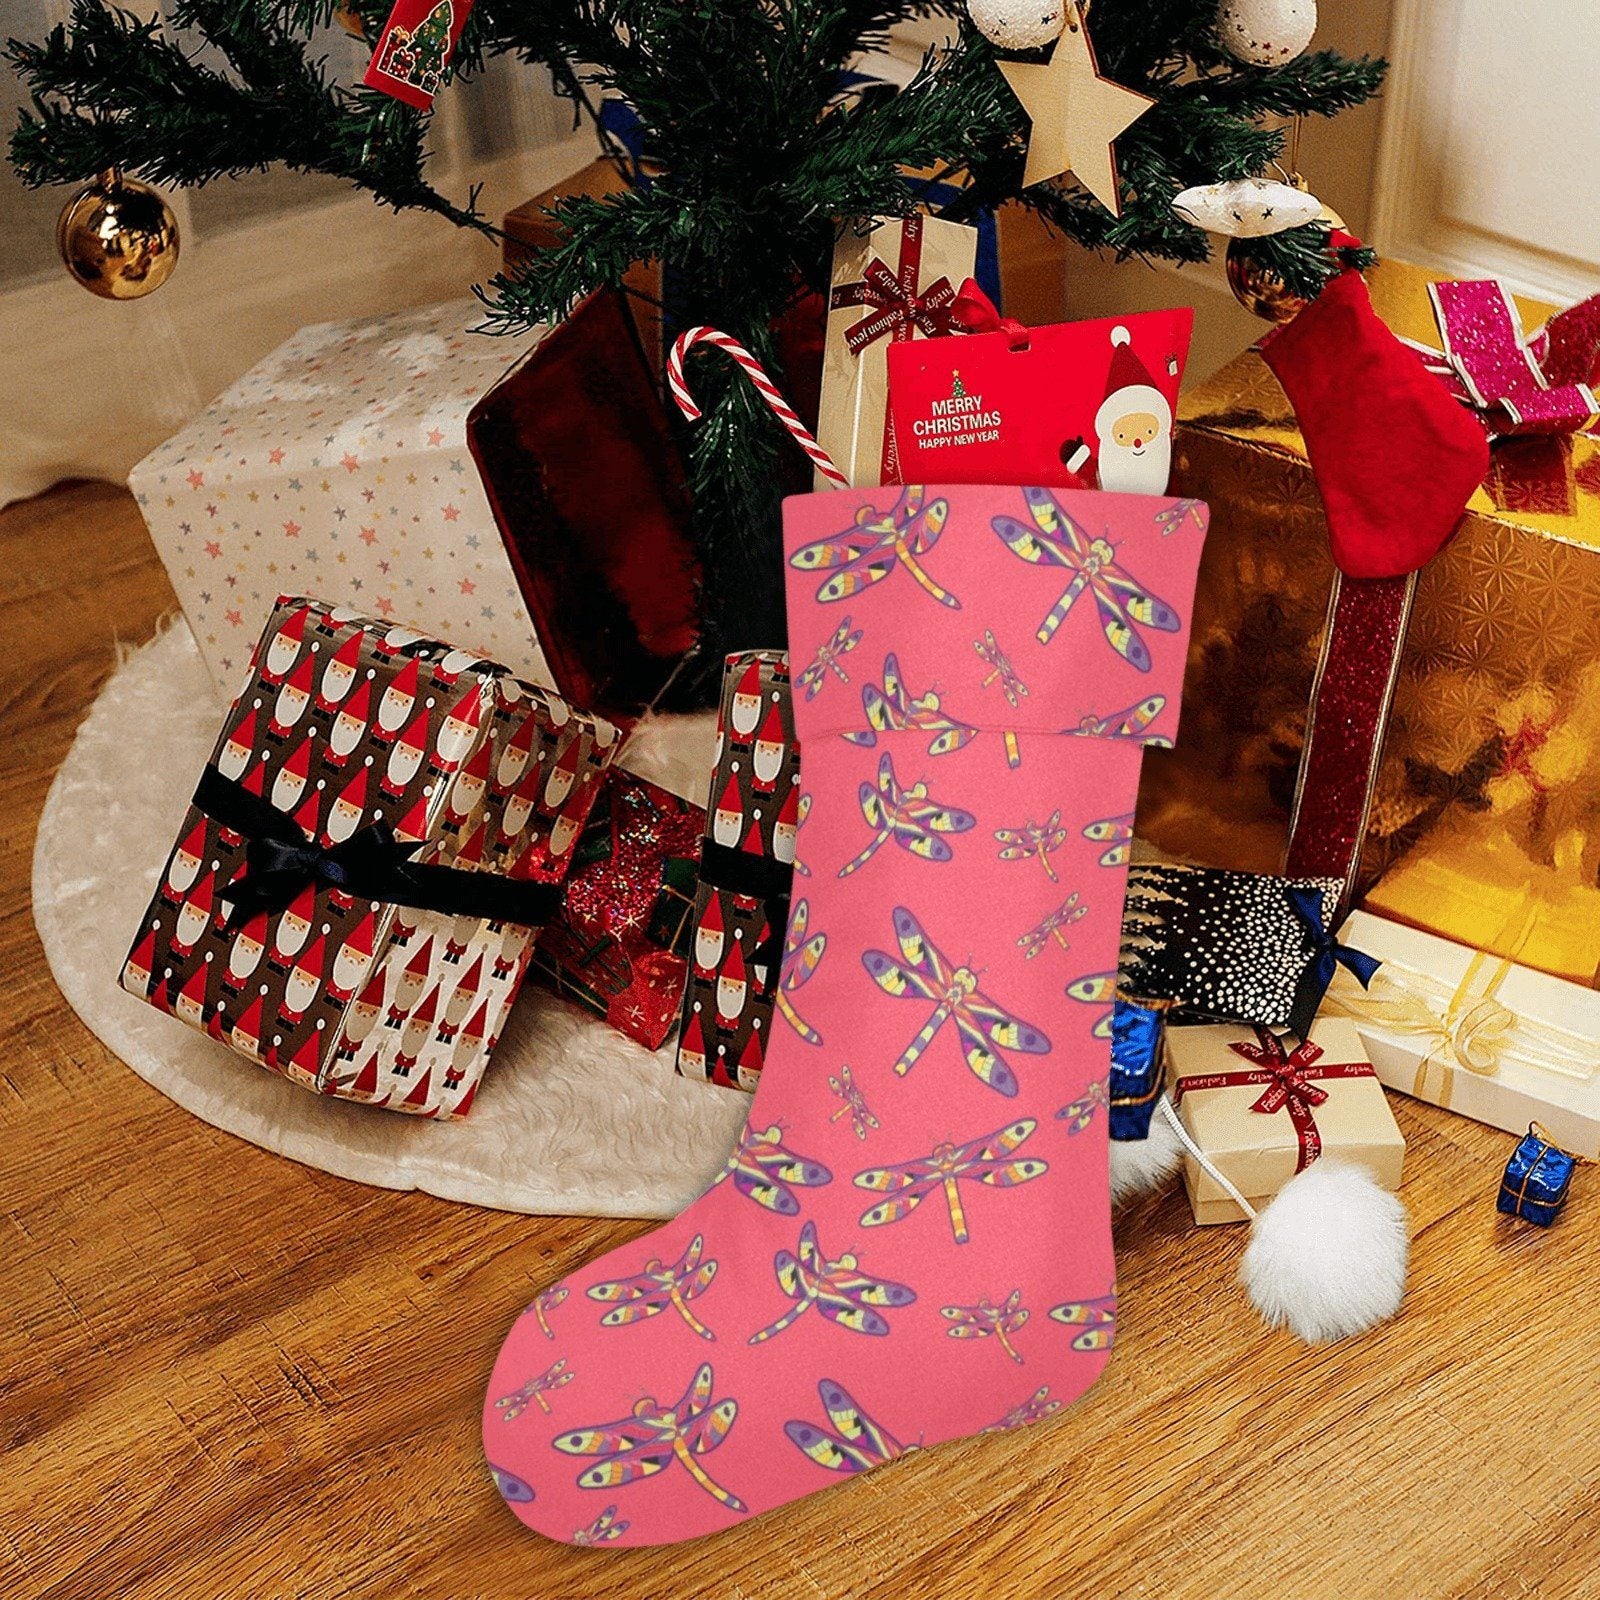 The Gathering Christmas Stocking holiday stocking e-joyer 